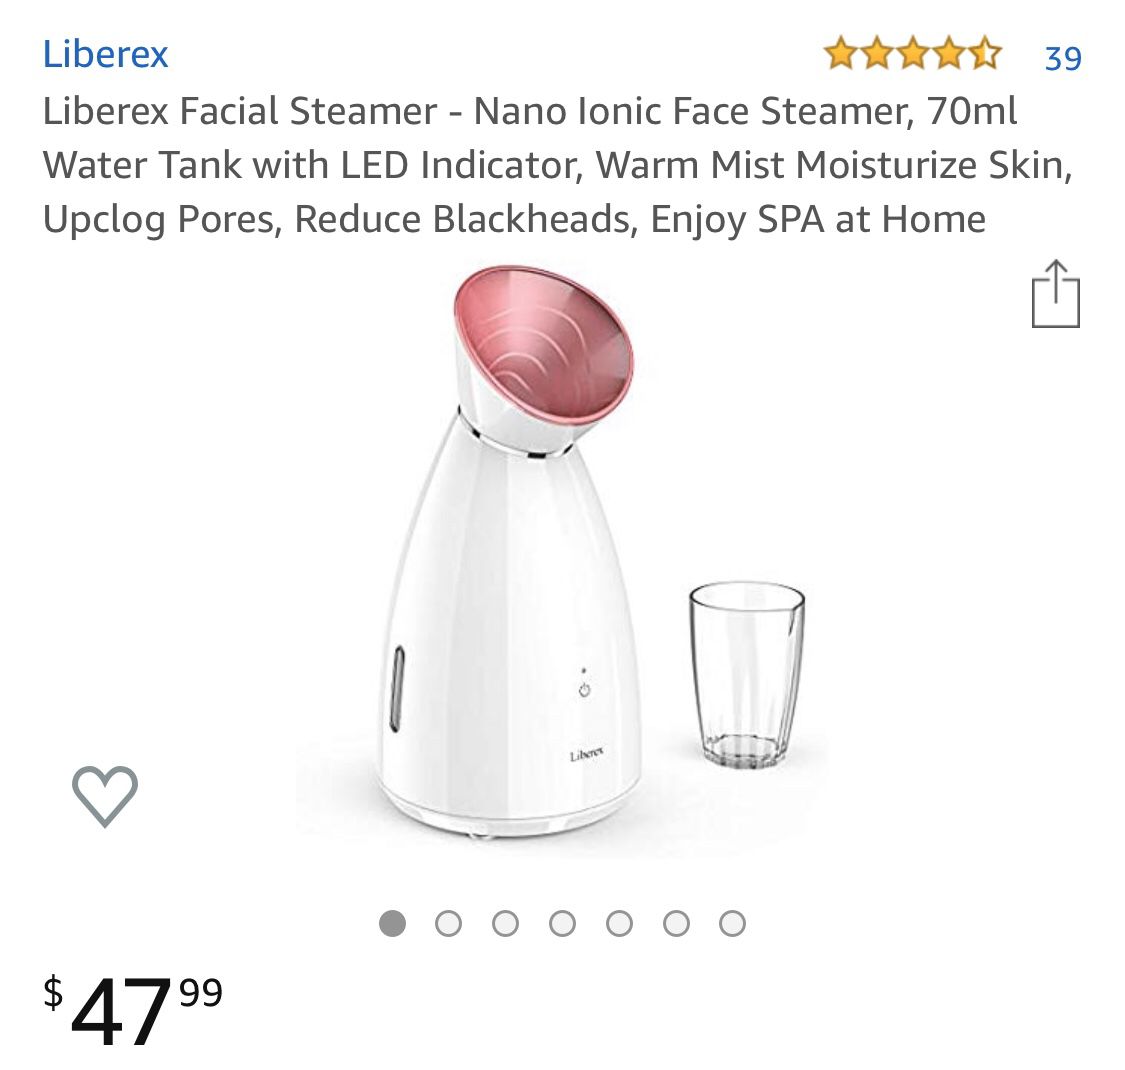 Liberex Facial Steamer - Nano Ionic Face Steamer